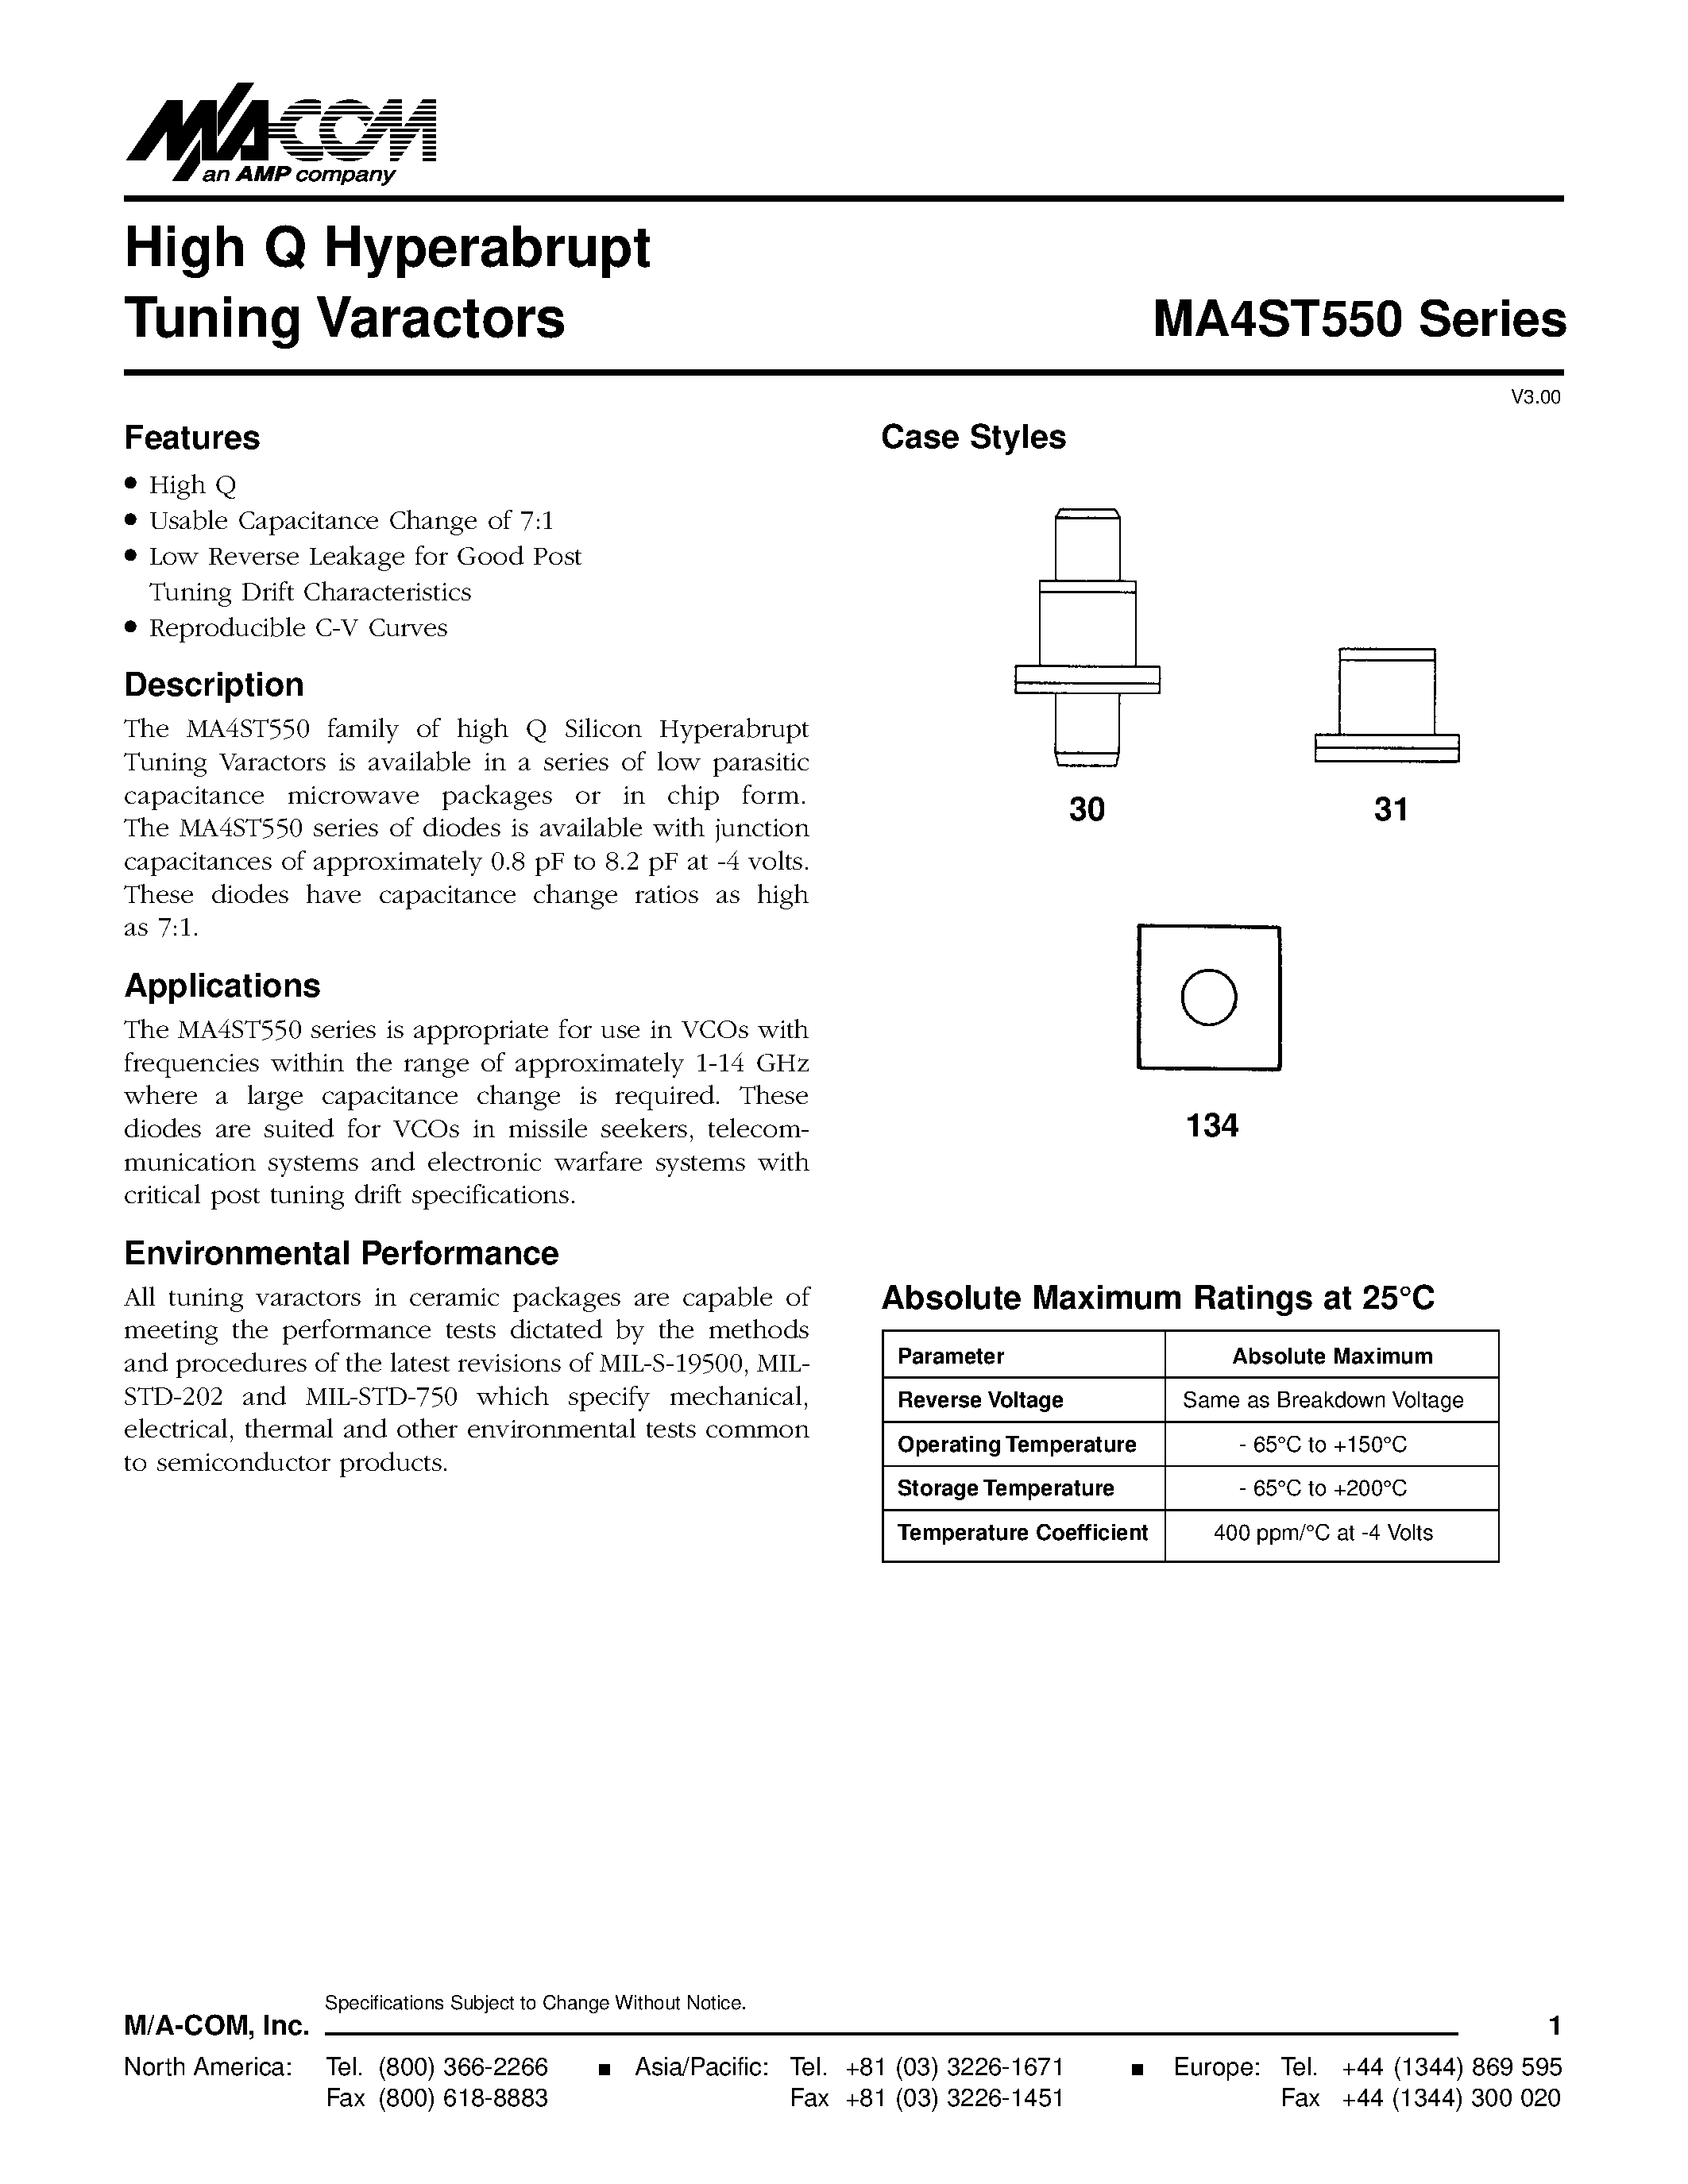 Даташит MA4ST557 - High Q Hyperabrupt Tuning Varactors страница 1